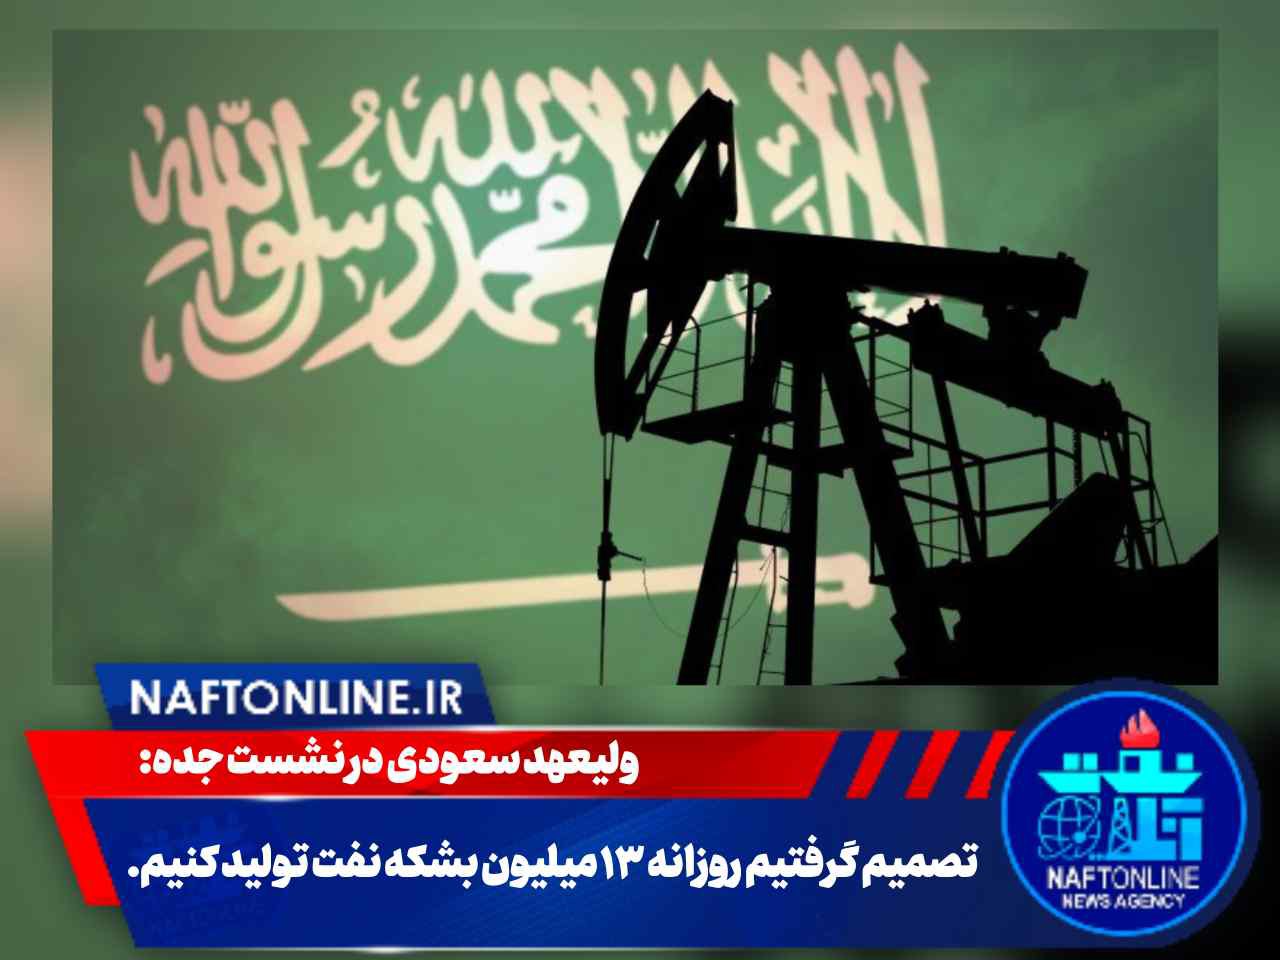 عربستان : تصمیم گرفتیم روزانه ۱۳ میلیون بشکه نفت تولید کنیم